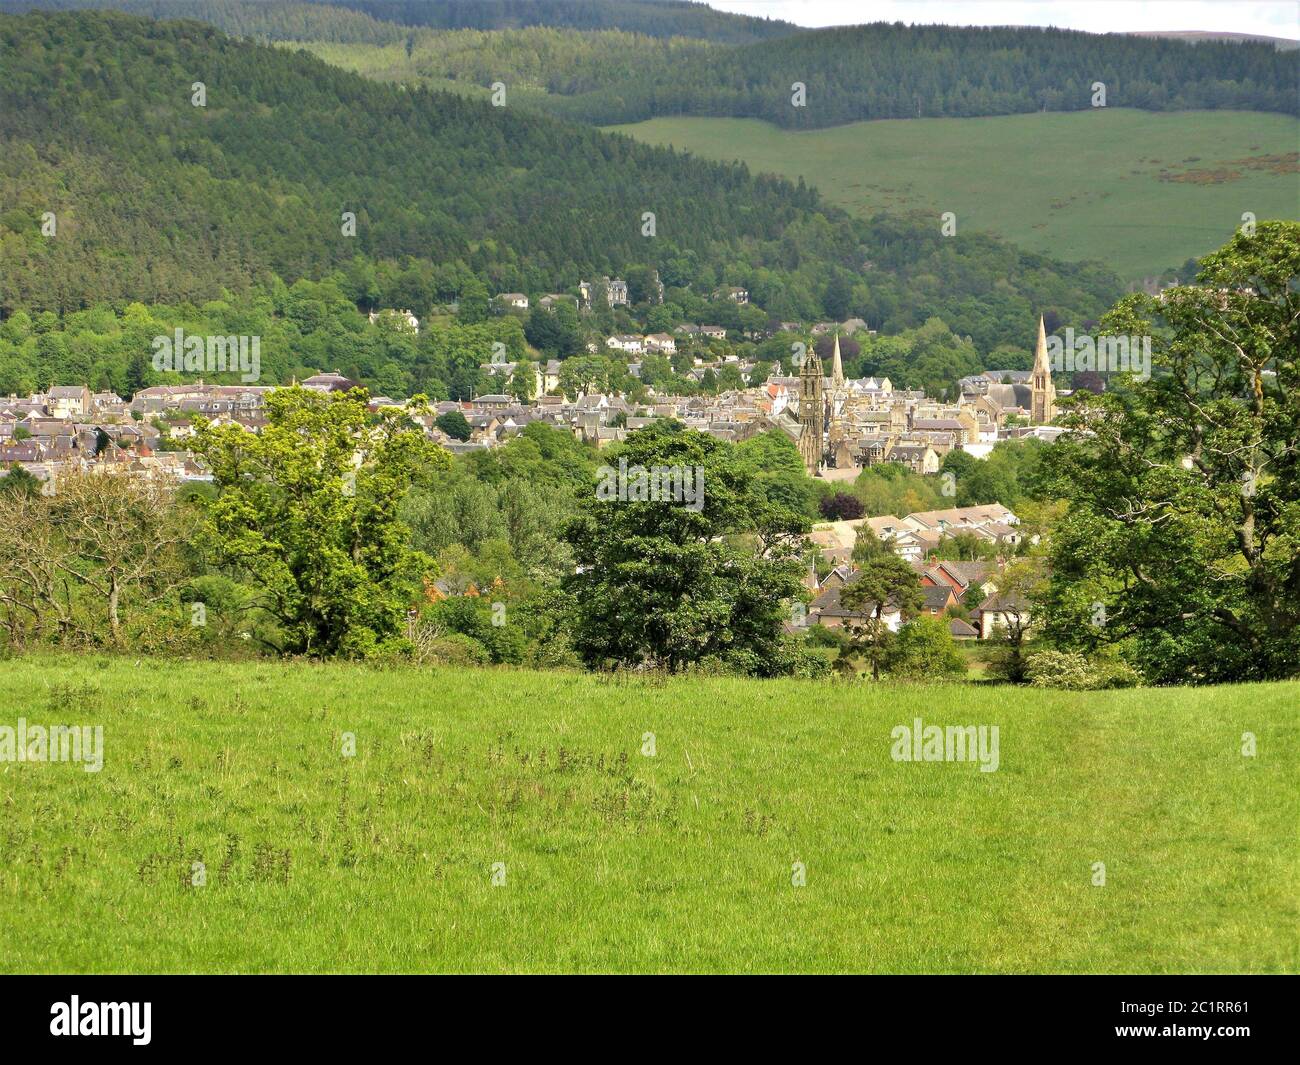 Blick über die Stadt Peebles in einem grünen Tal in den Scottish Borders, Schottland Stockfoto